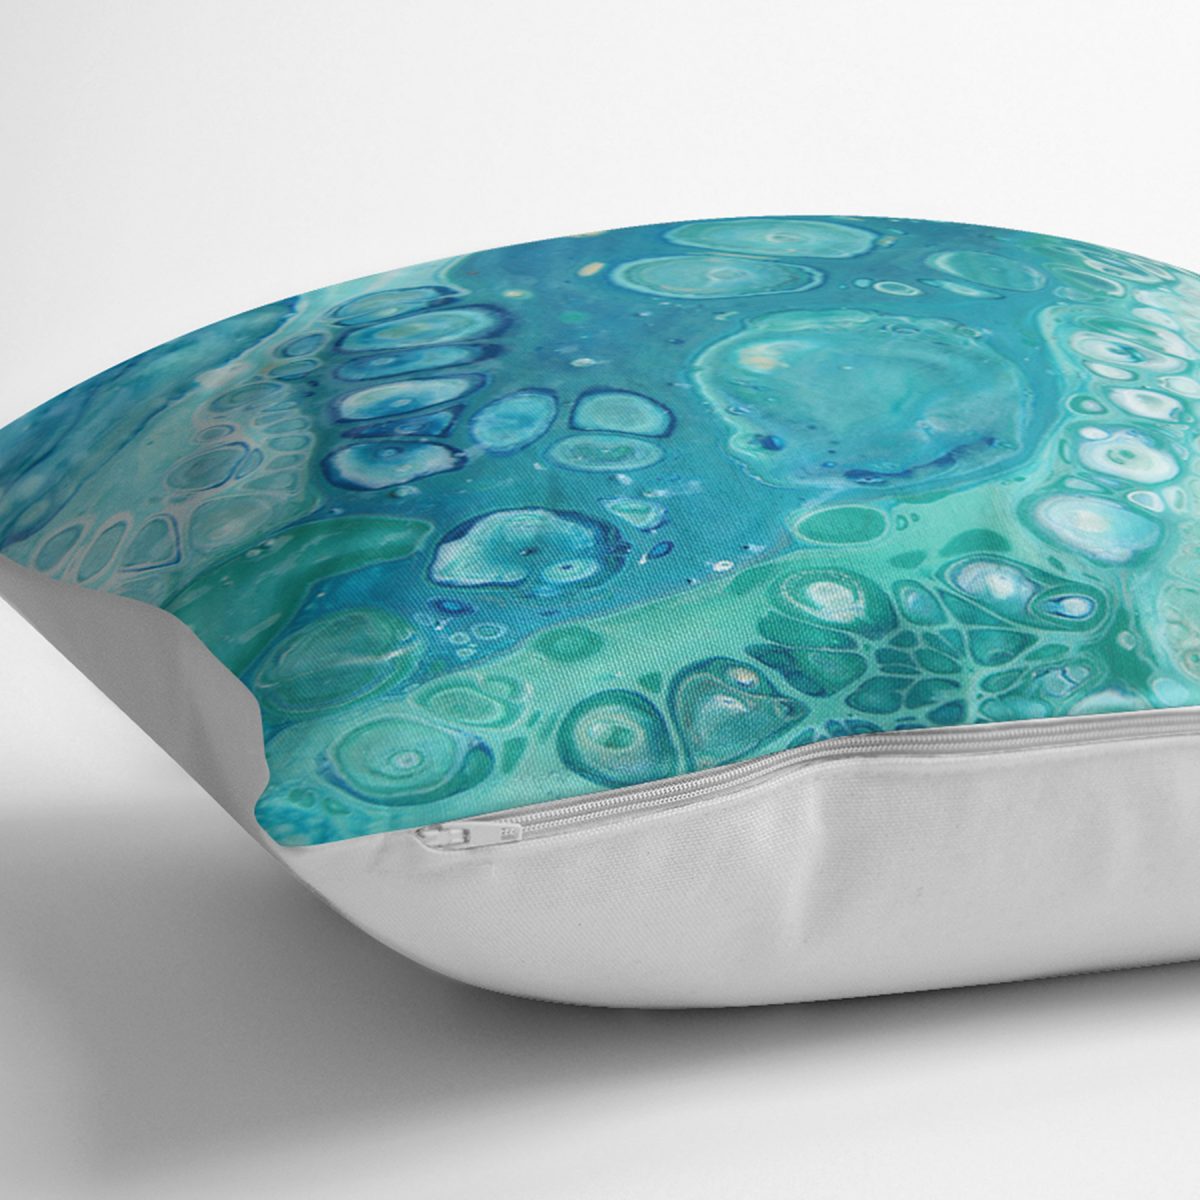 Realhomes Turkuaz Renkli Suluboya Tasarımlı Deniz Temalı Özel Tasarımlı Modern Yastık Kırlent Kılıfı Realhomes